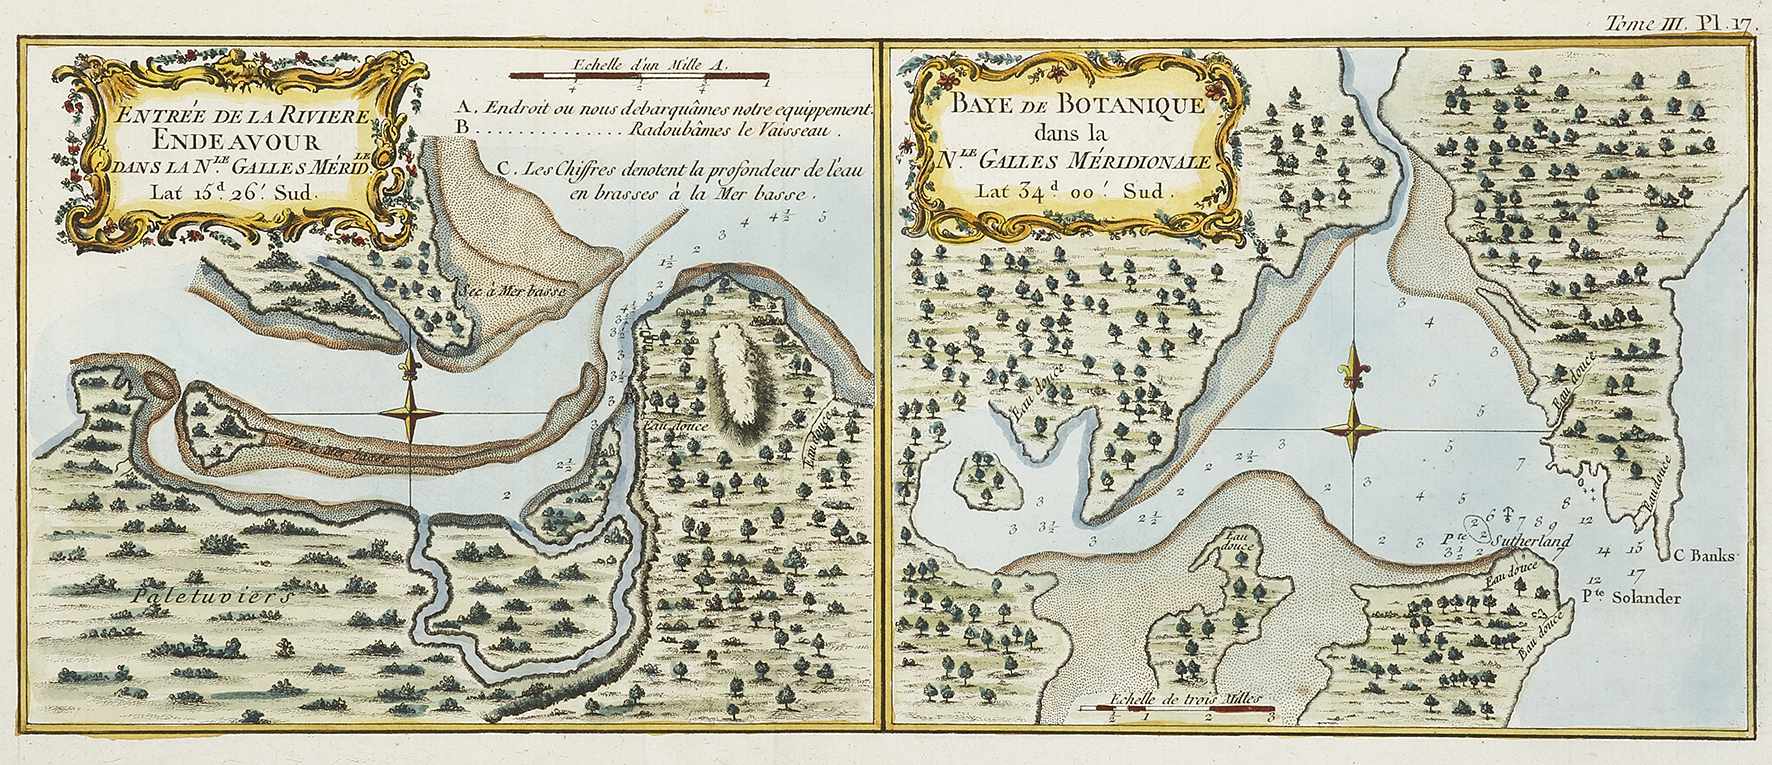 Entree de la Riviere Endeavour.  Baye de Botanique dans la Nle. Galles Meridionale. - Antique Map from 1774